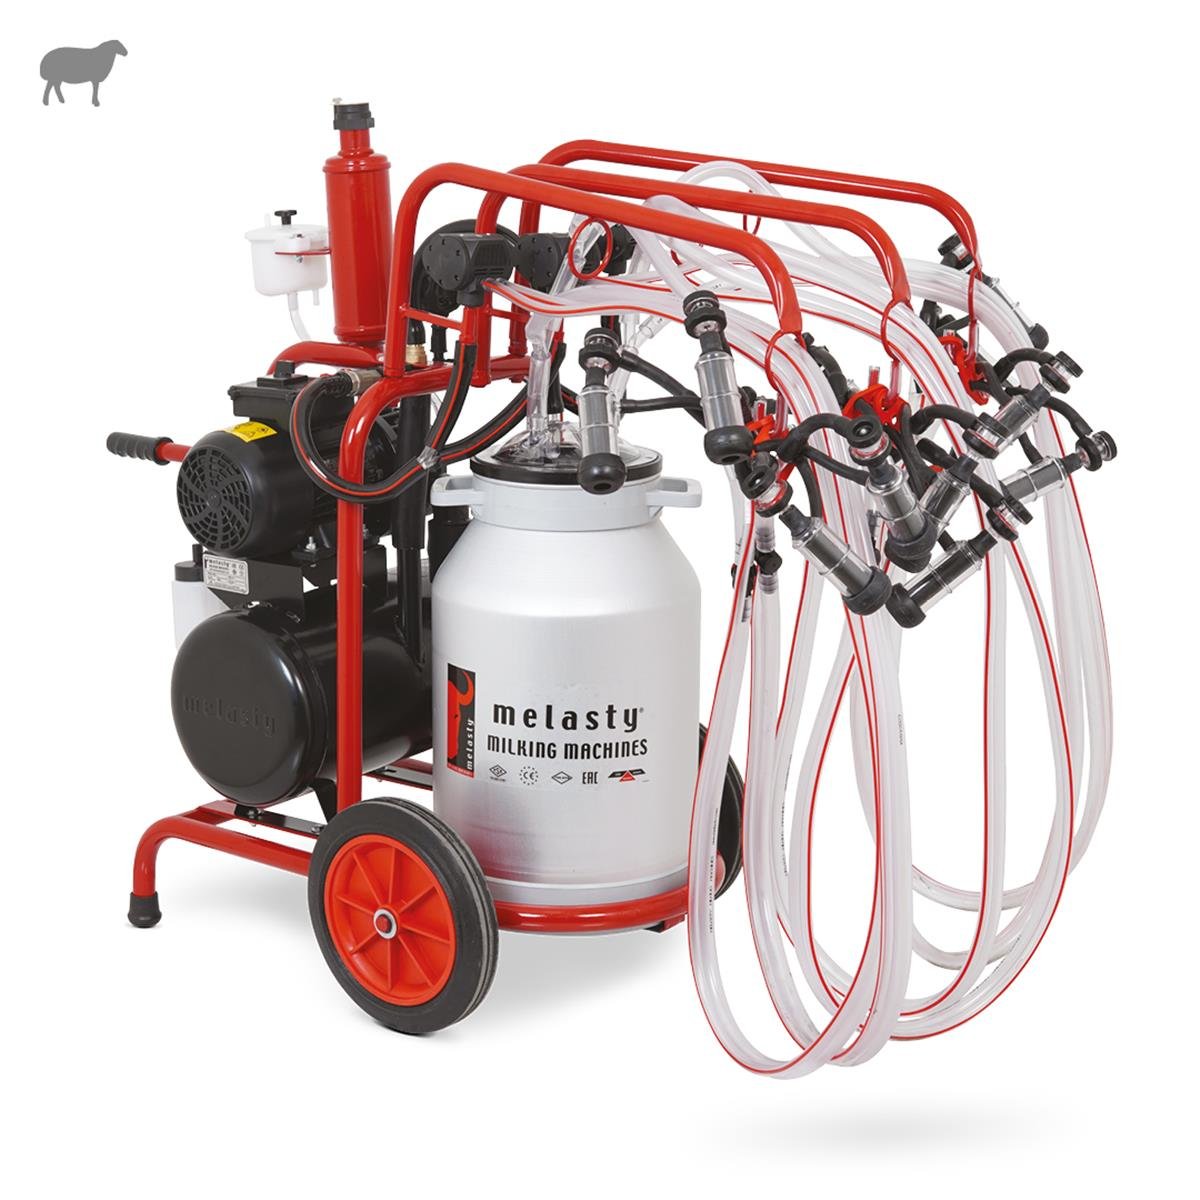 Melasty Altılı Koyun Süt Sağma Makinesi (Alüminyum Güğüm - Kauçuk Memelik)  (Plus Yağlı Pompa) | Cimritilki.com